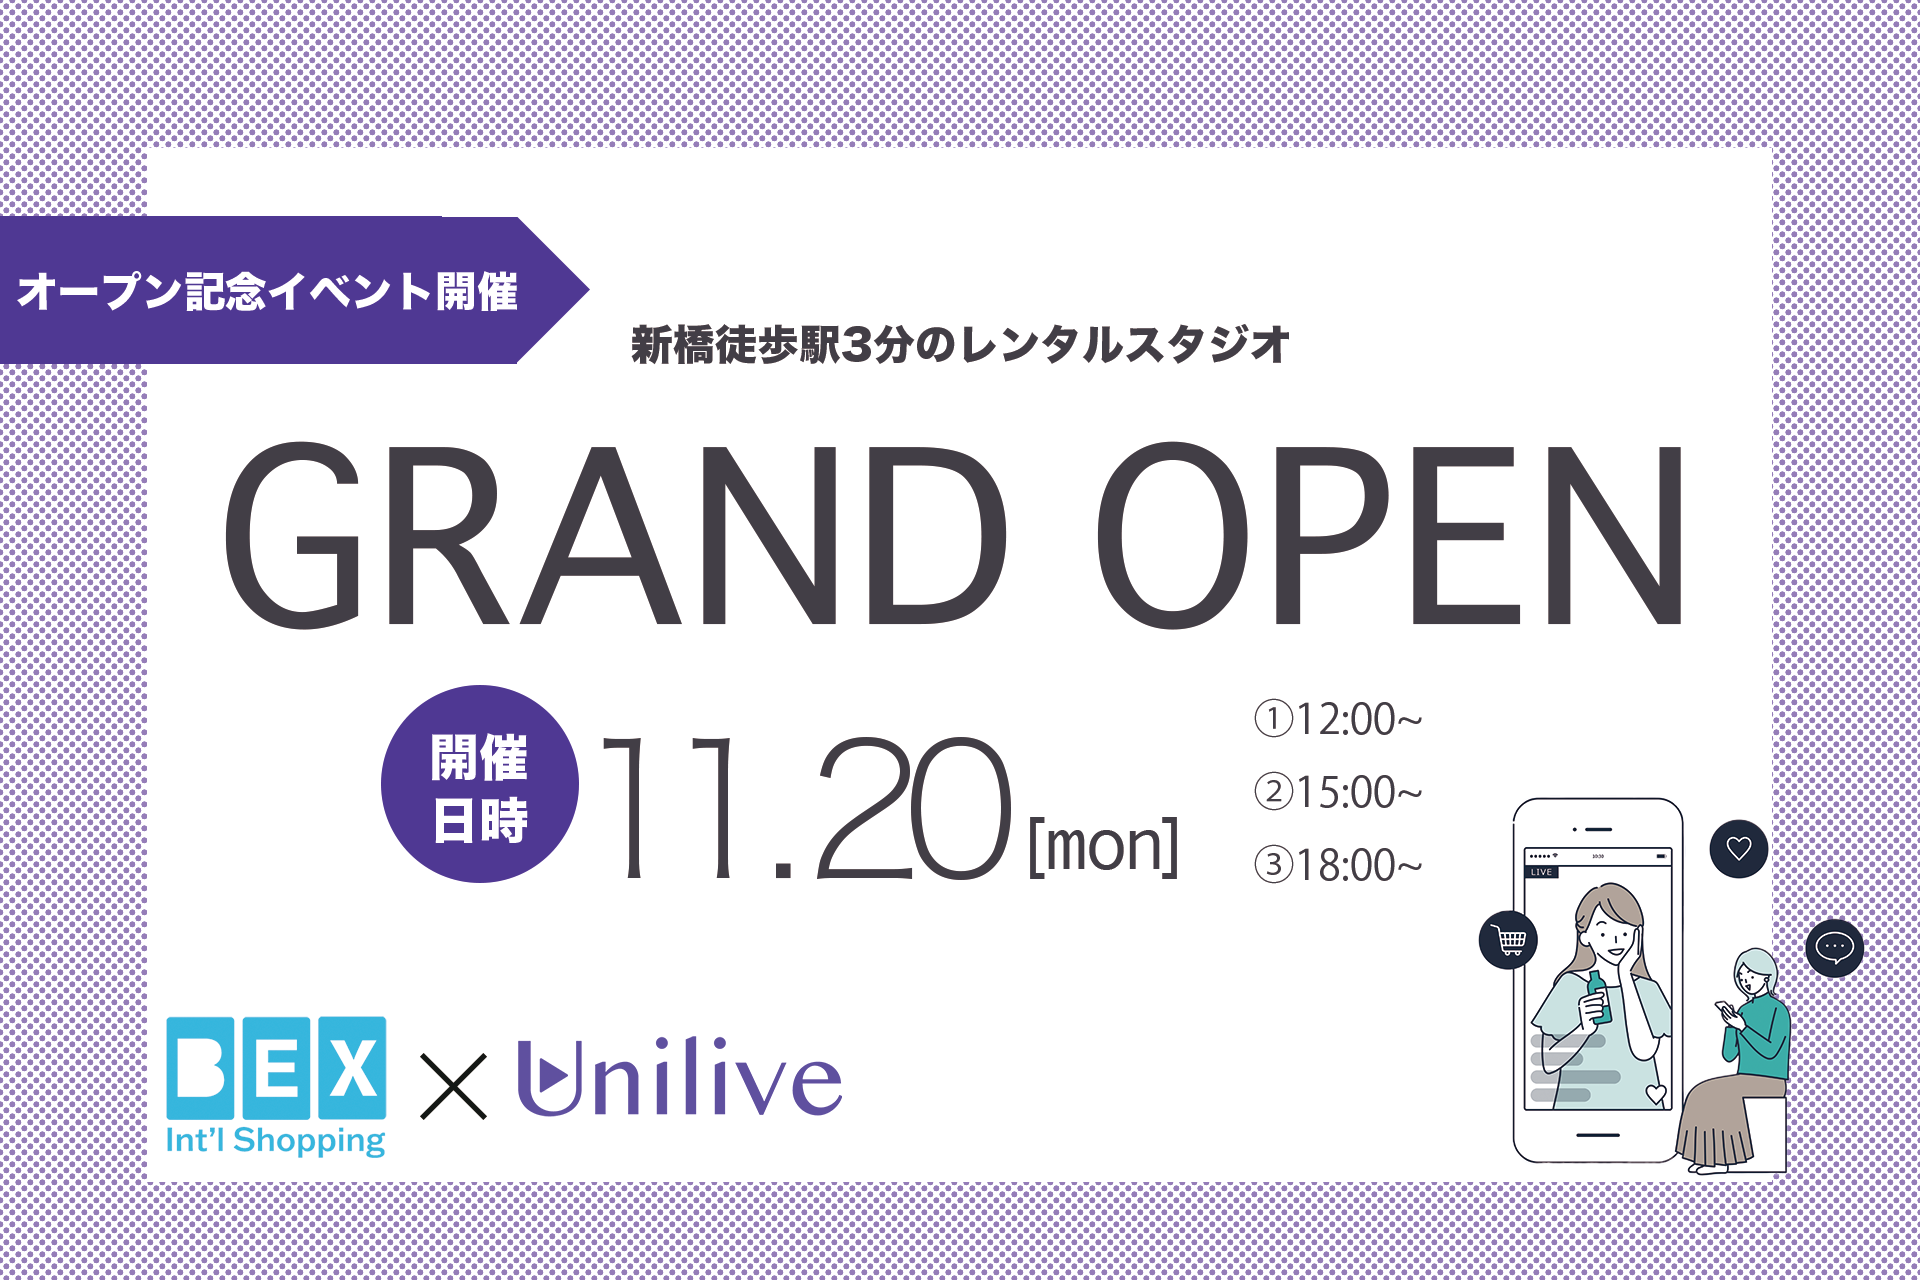 ライブコマース総合プラットホーム「UNILIVE」の新橋駅前スタジオ・オープンイベントに登壇します。